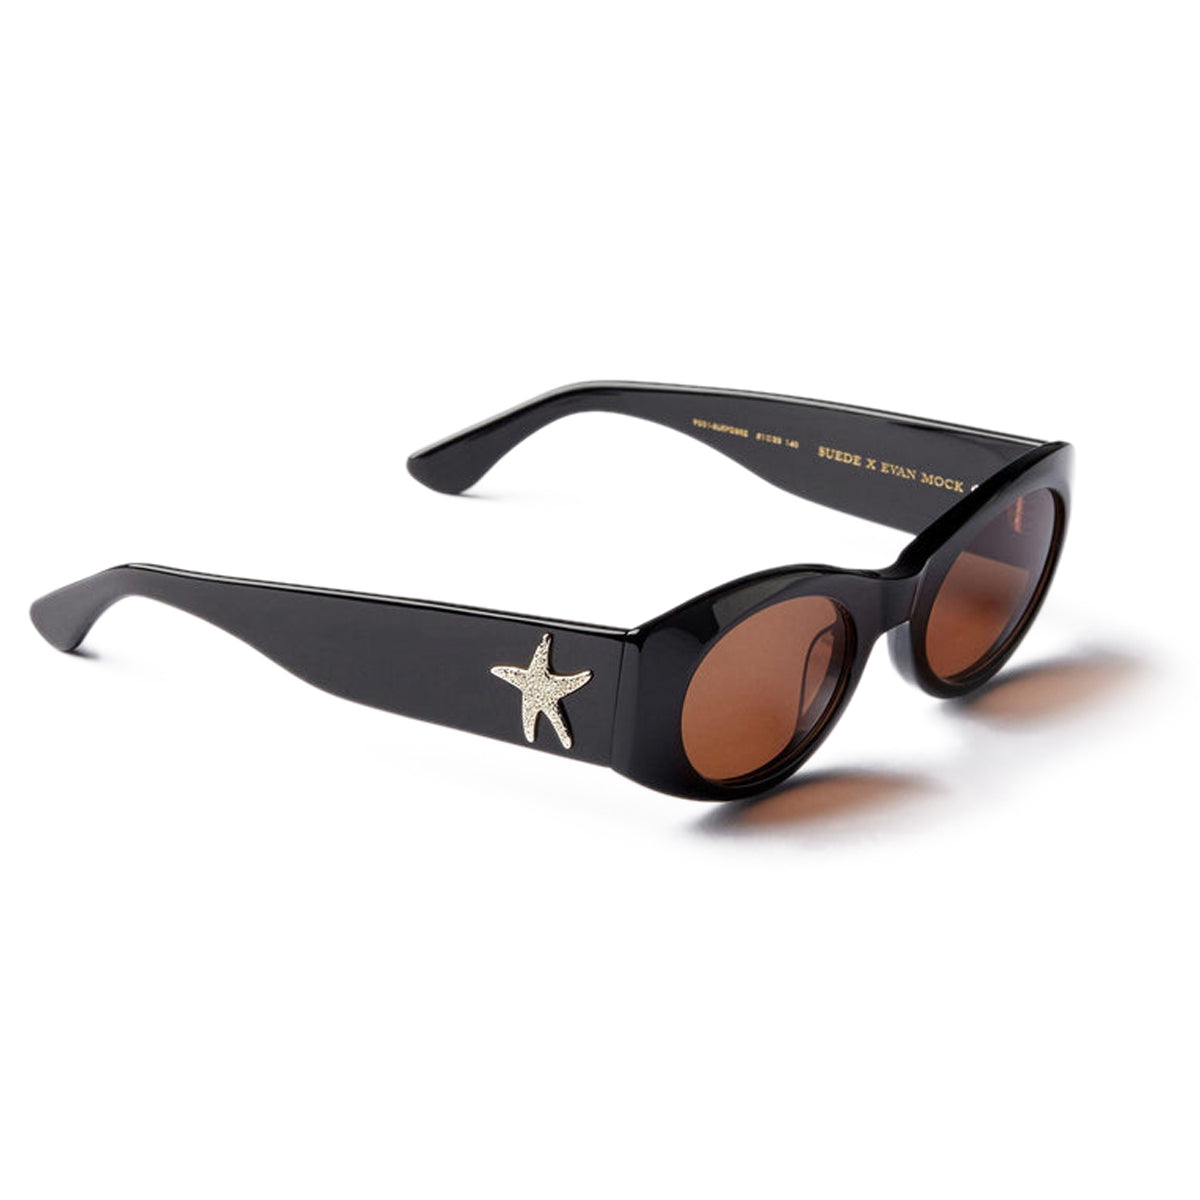 Epokhe Suede Sunglasses - Black Polished/Bronze Amber image 1